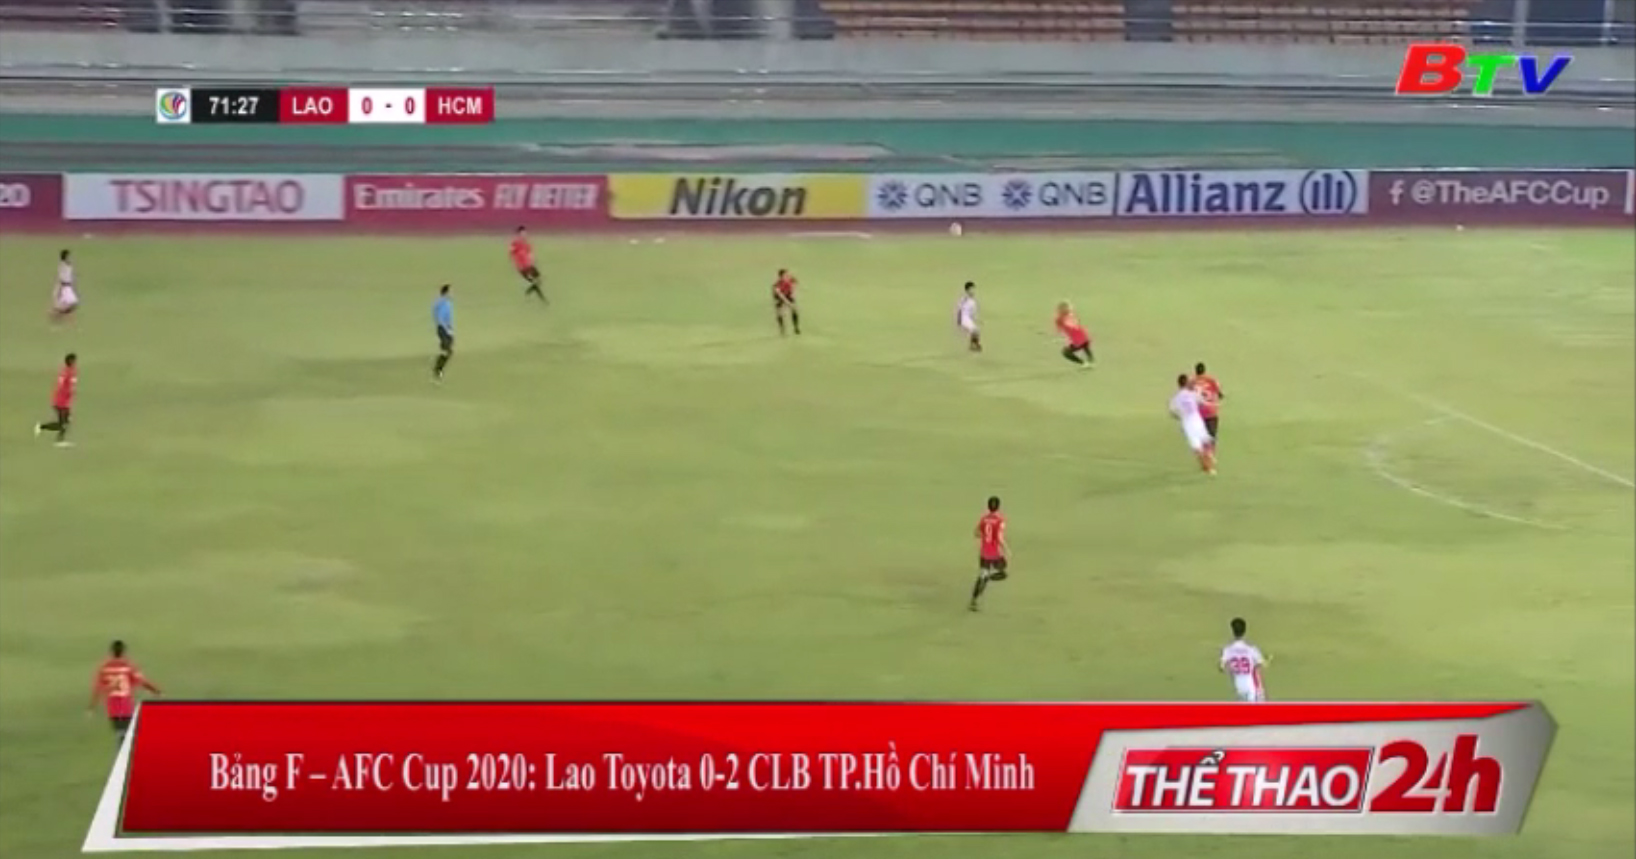 Bảng F AFC Cup 2020 – Lào Toyota 0-2 CLB TP. Hồ Chí Minh